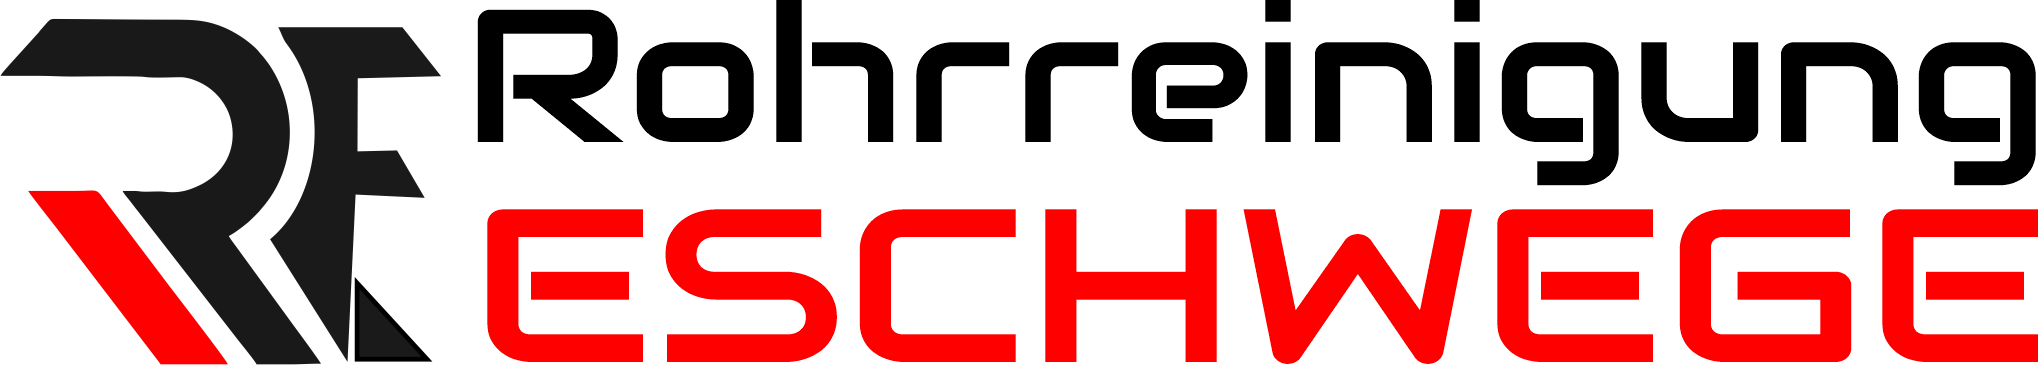 Rohrreinigung Eschwege Logo